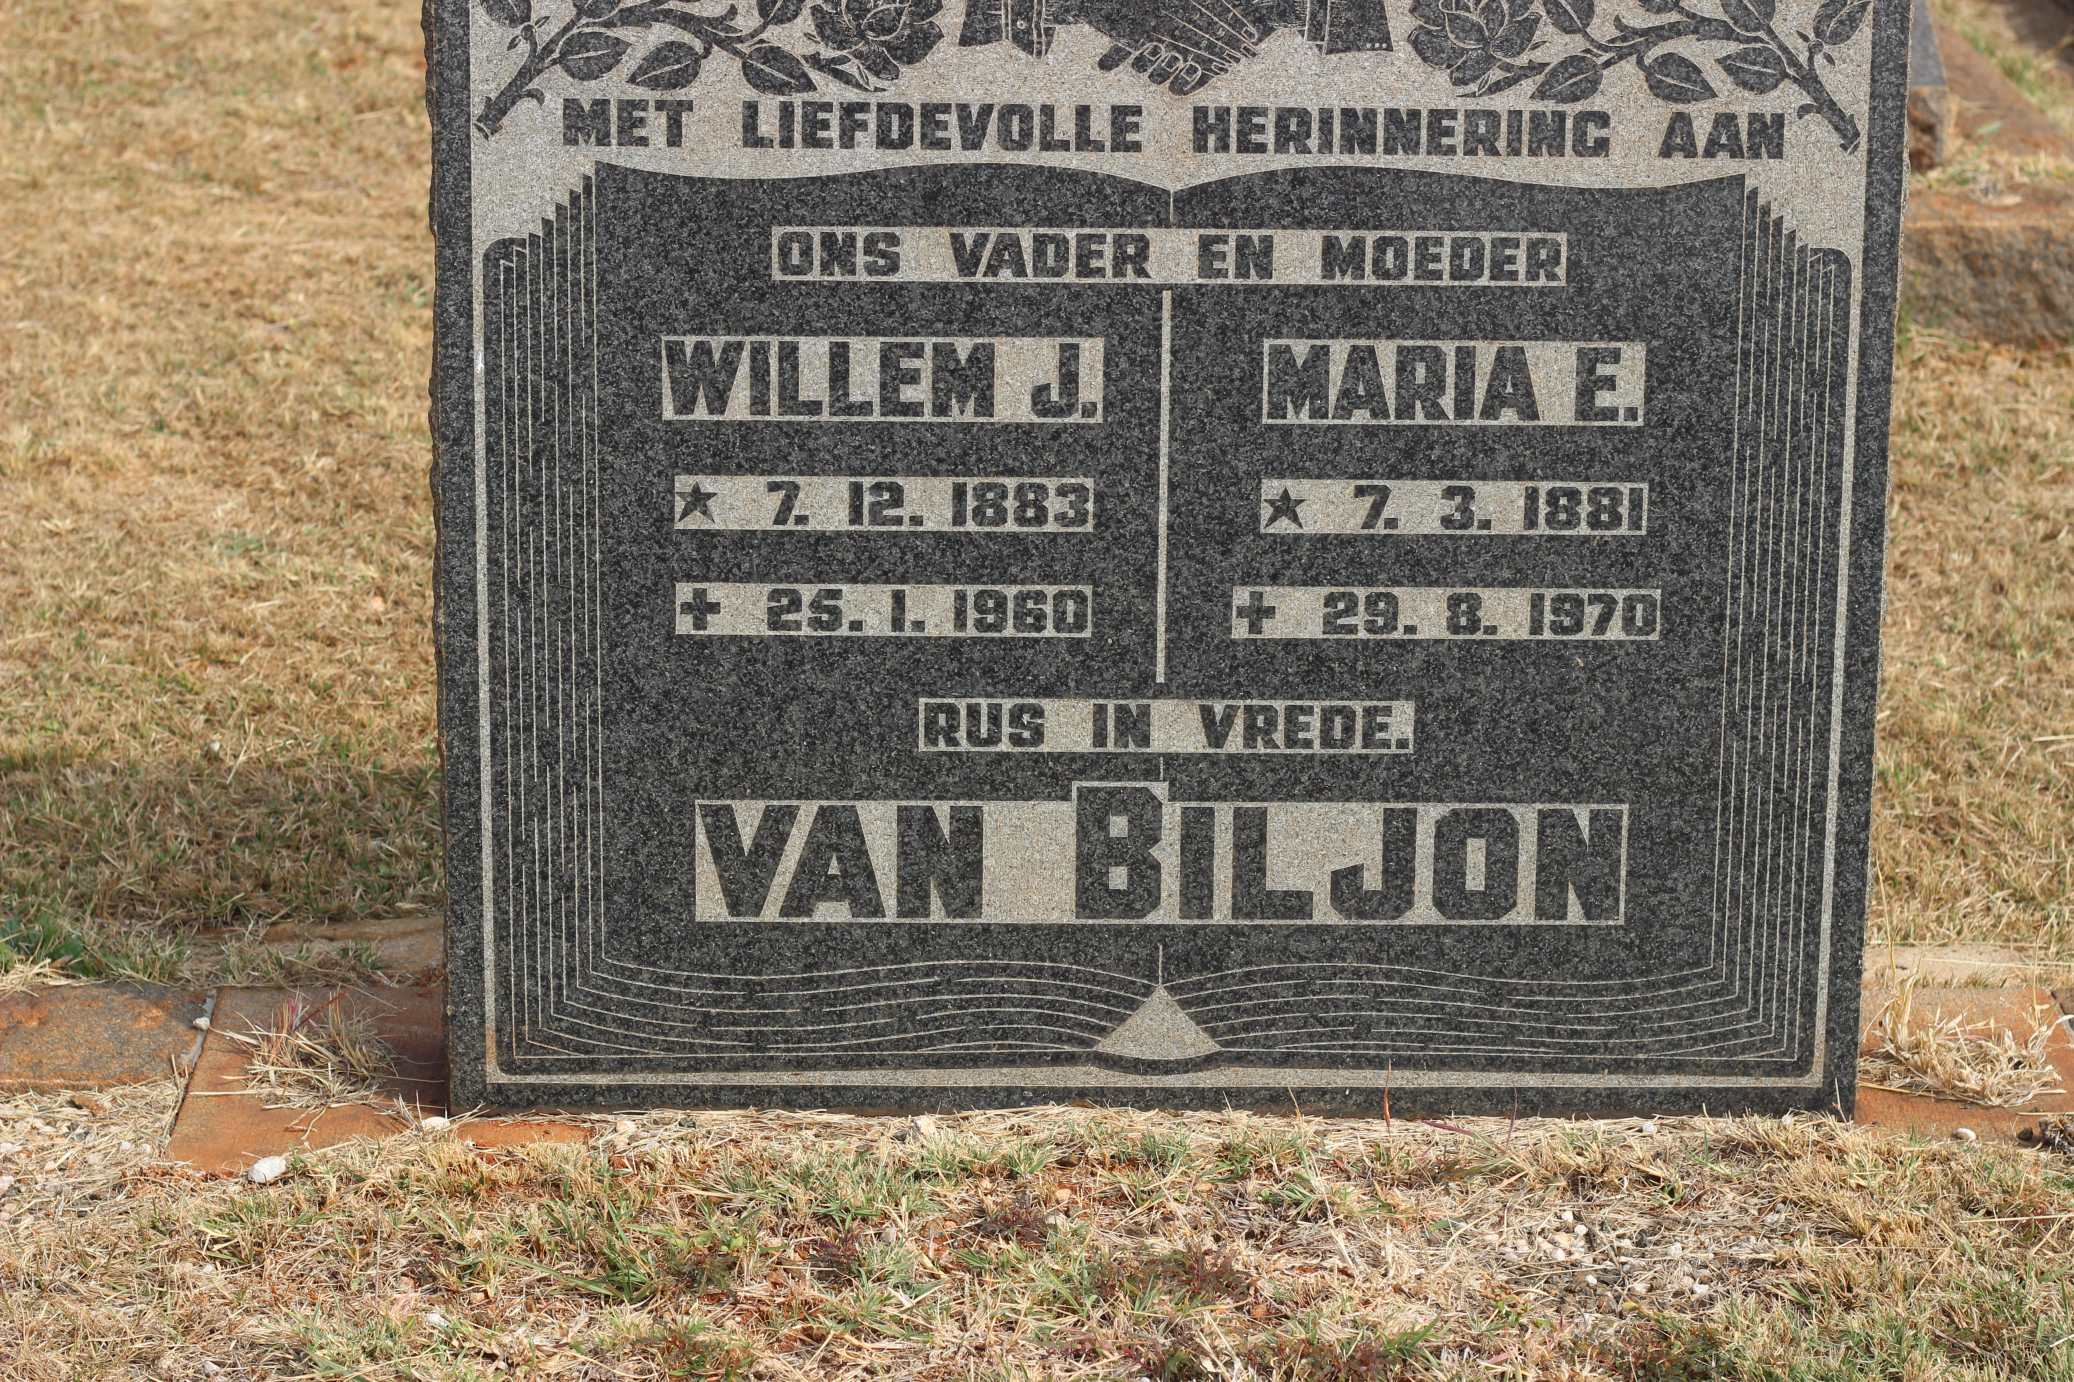 BILJON Willem J., van 1883-1960 & Maria E. 1881-1970